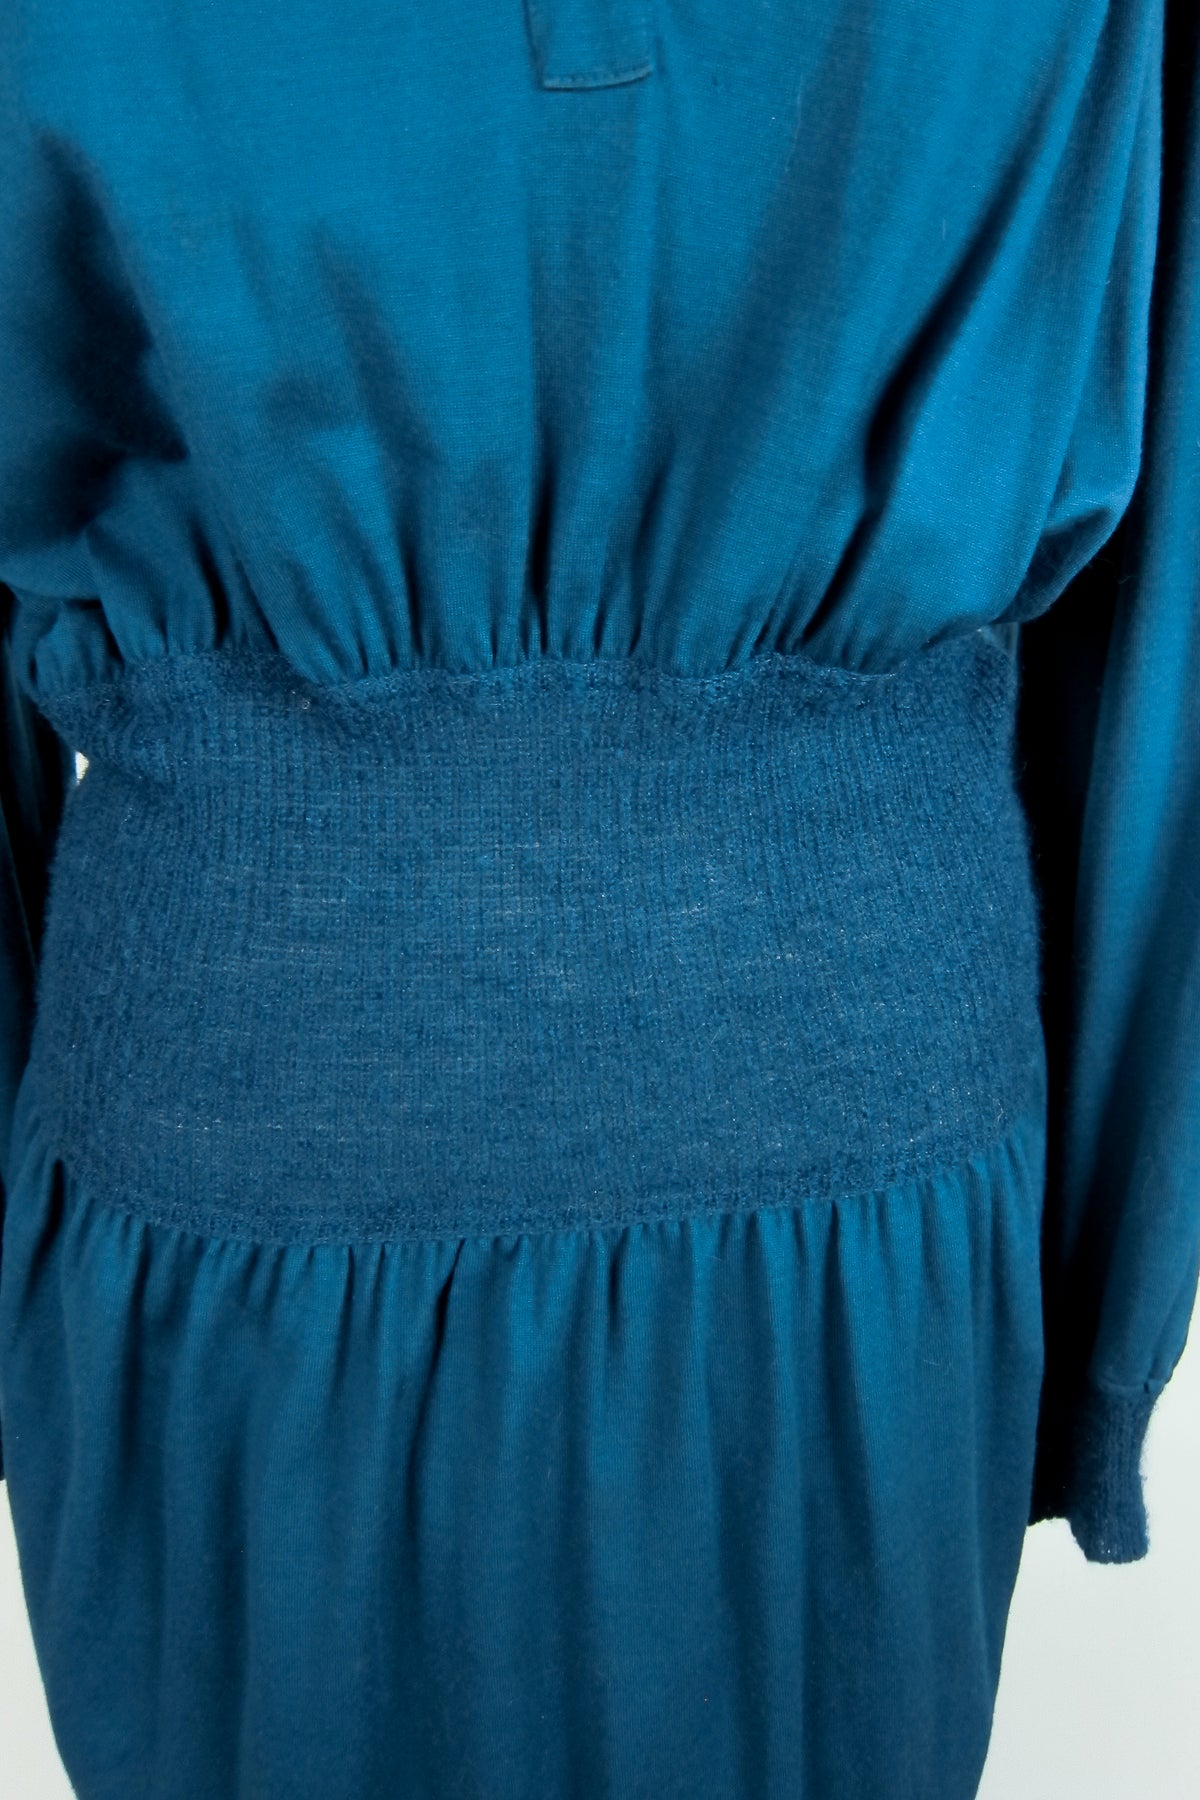 Teal Missoni Wool Knit Dress